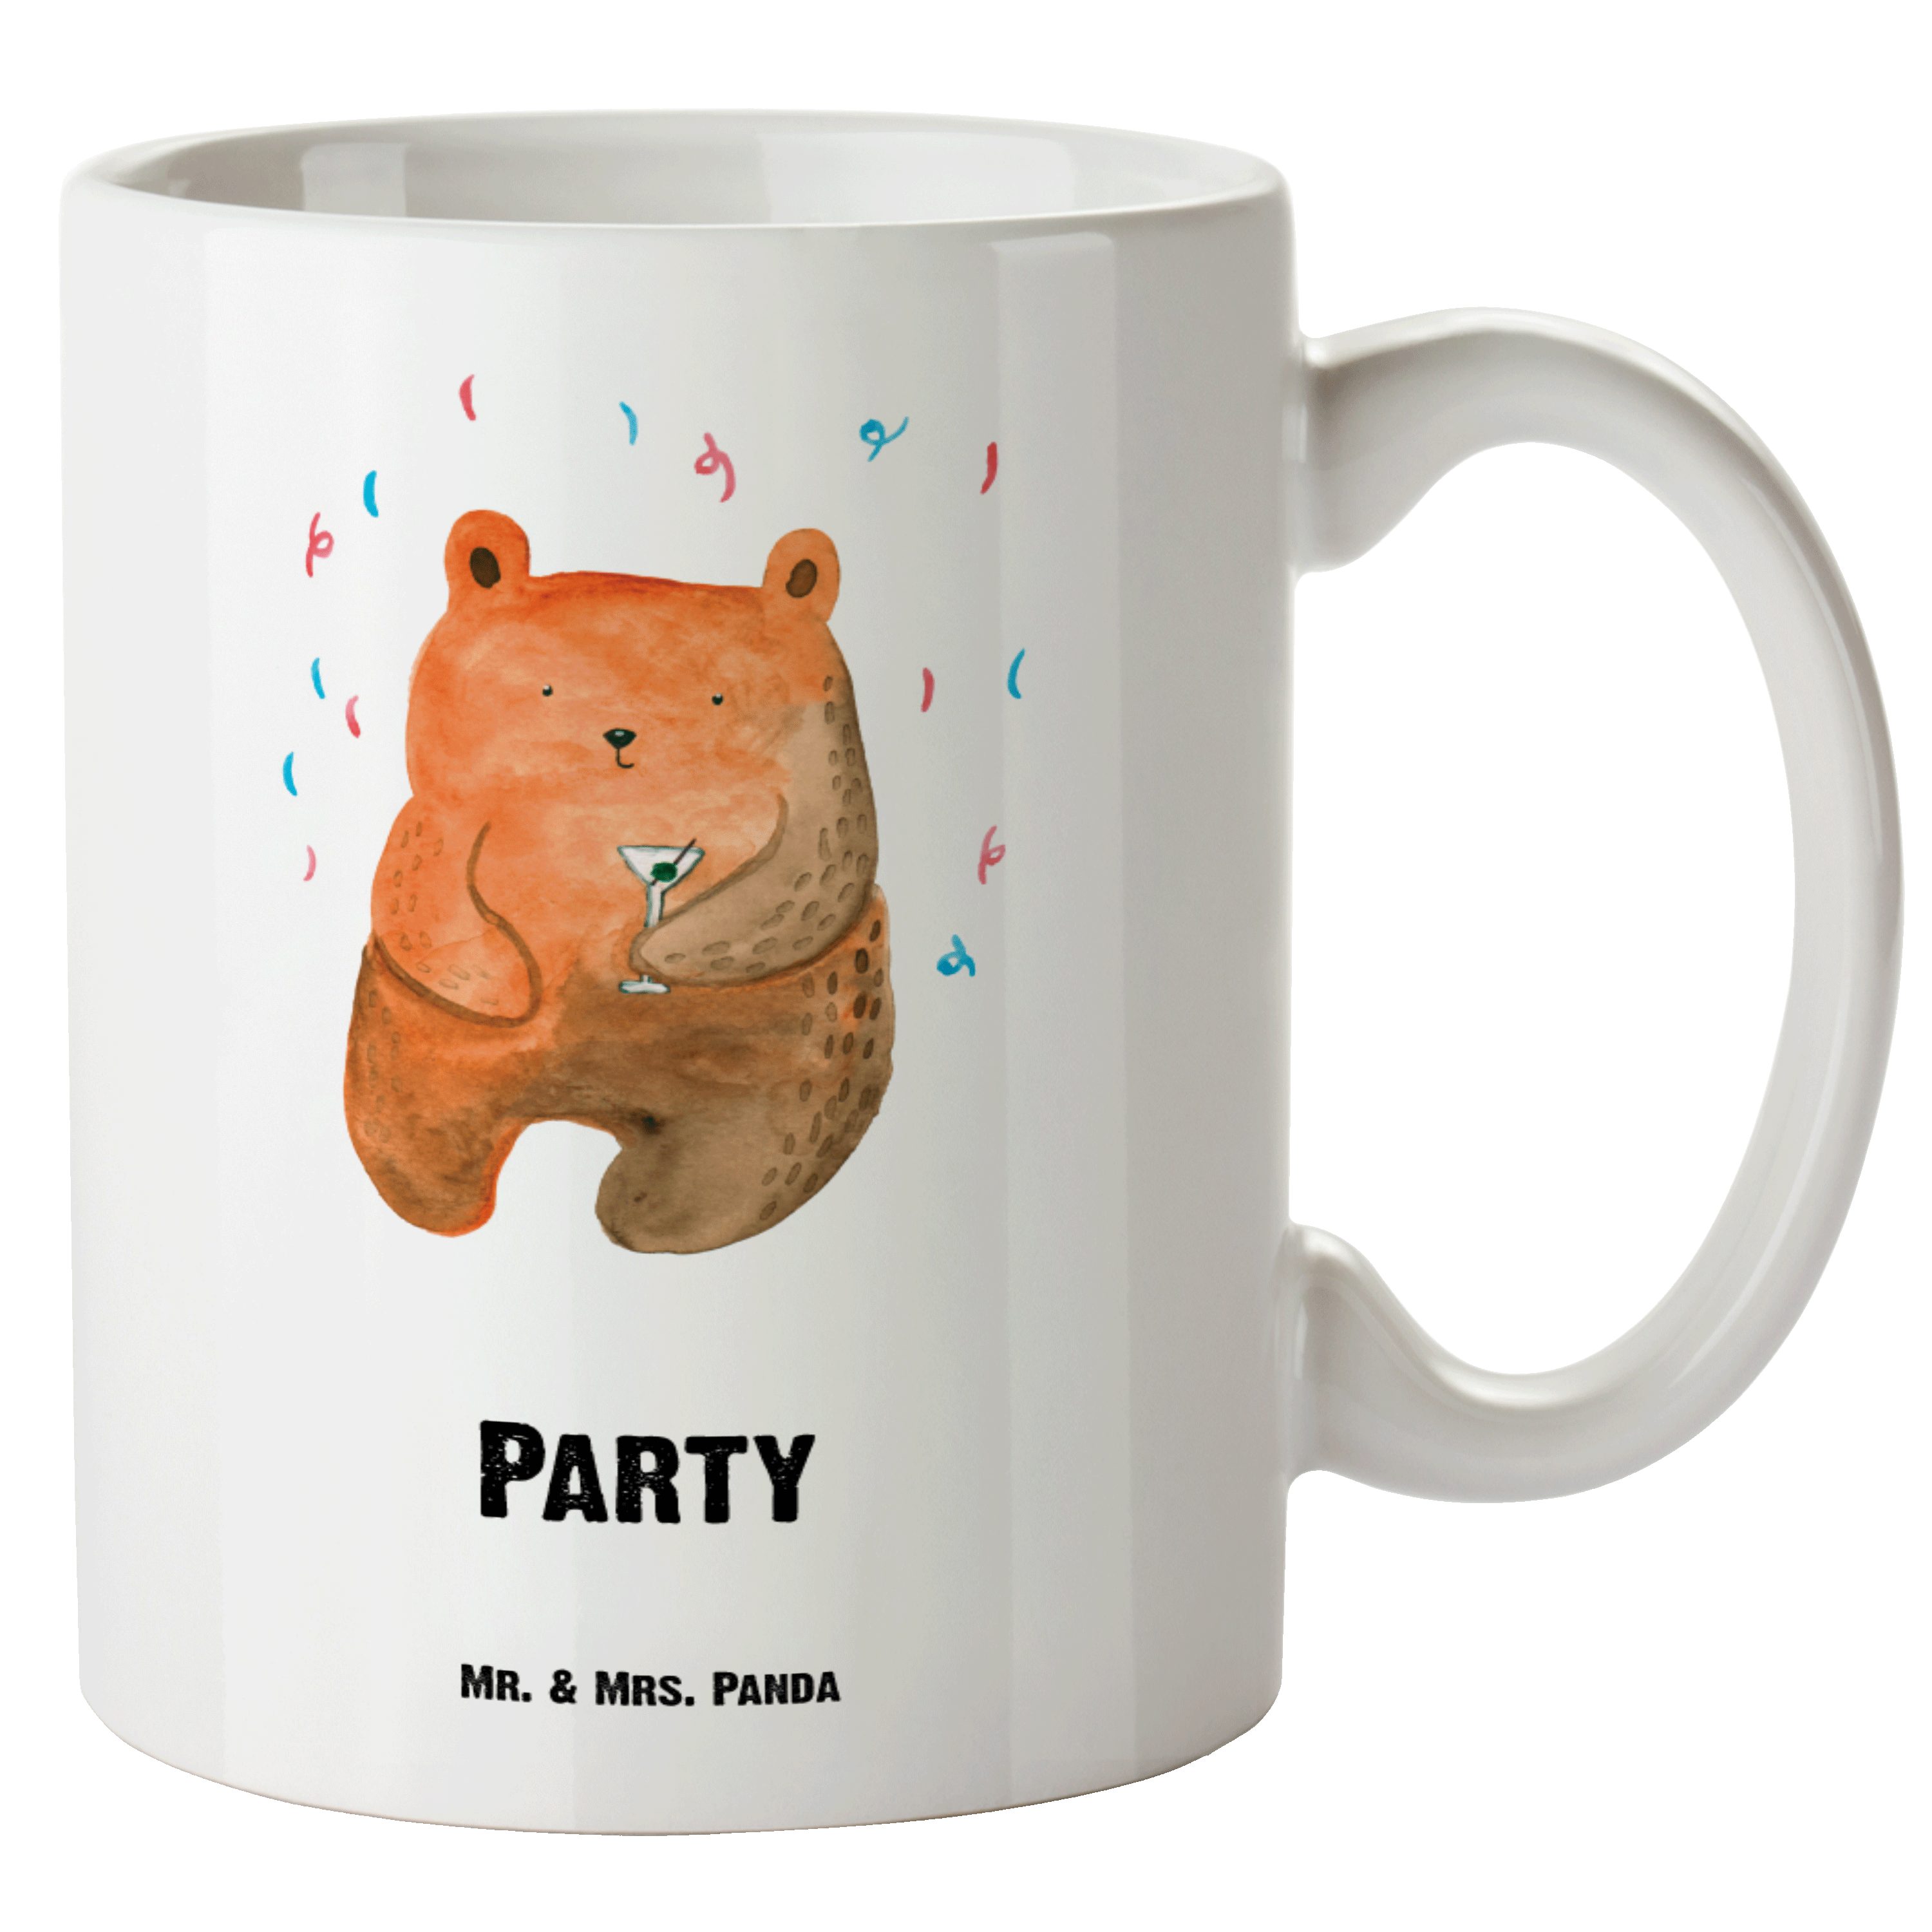 Mr. & Mrs. Panda Tasse Bär Party - Weiß - Geschenk, Teddy, Große Tasse, Geburtstag, XL Tasse, XL Tasse Keramik